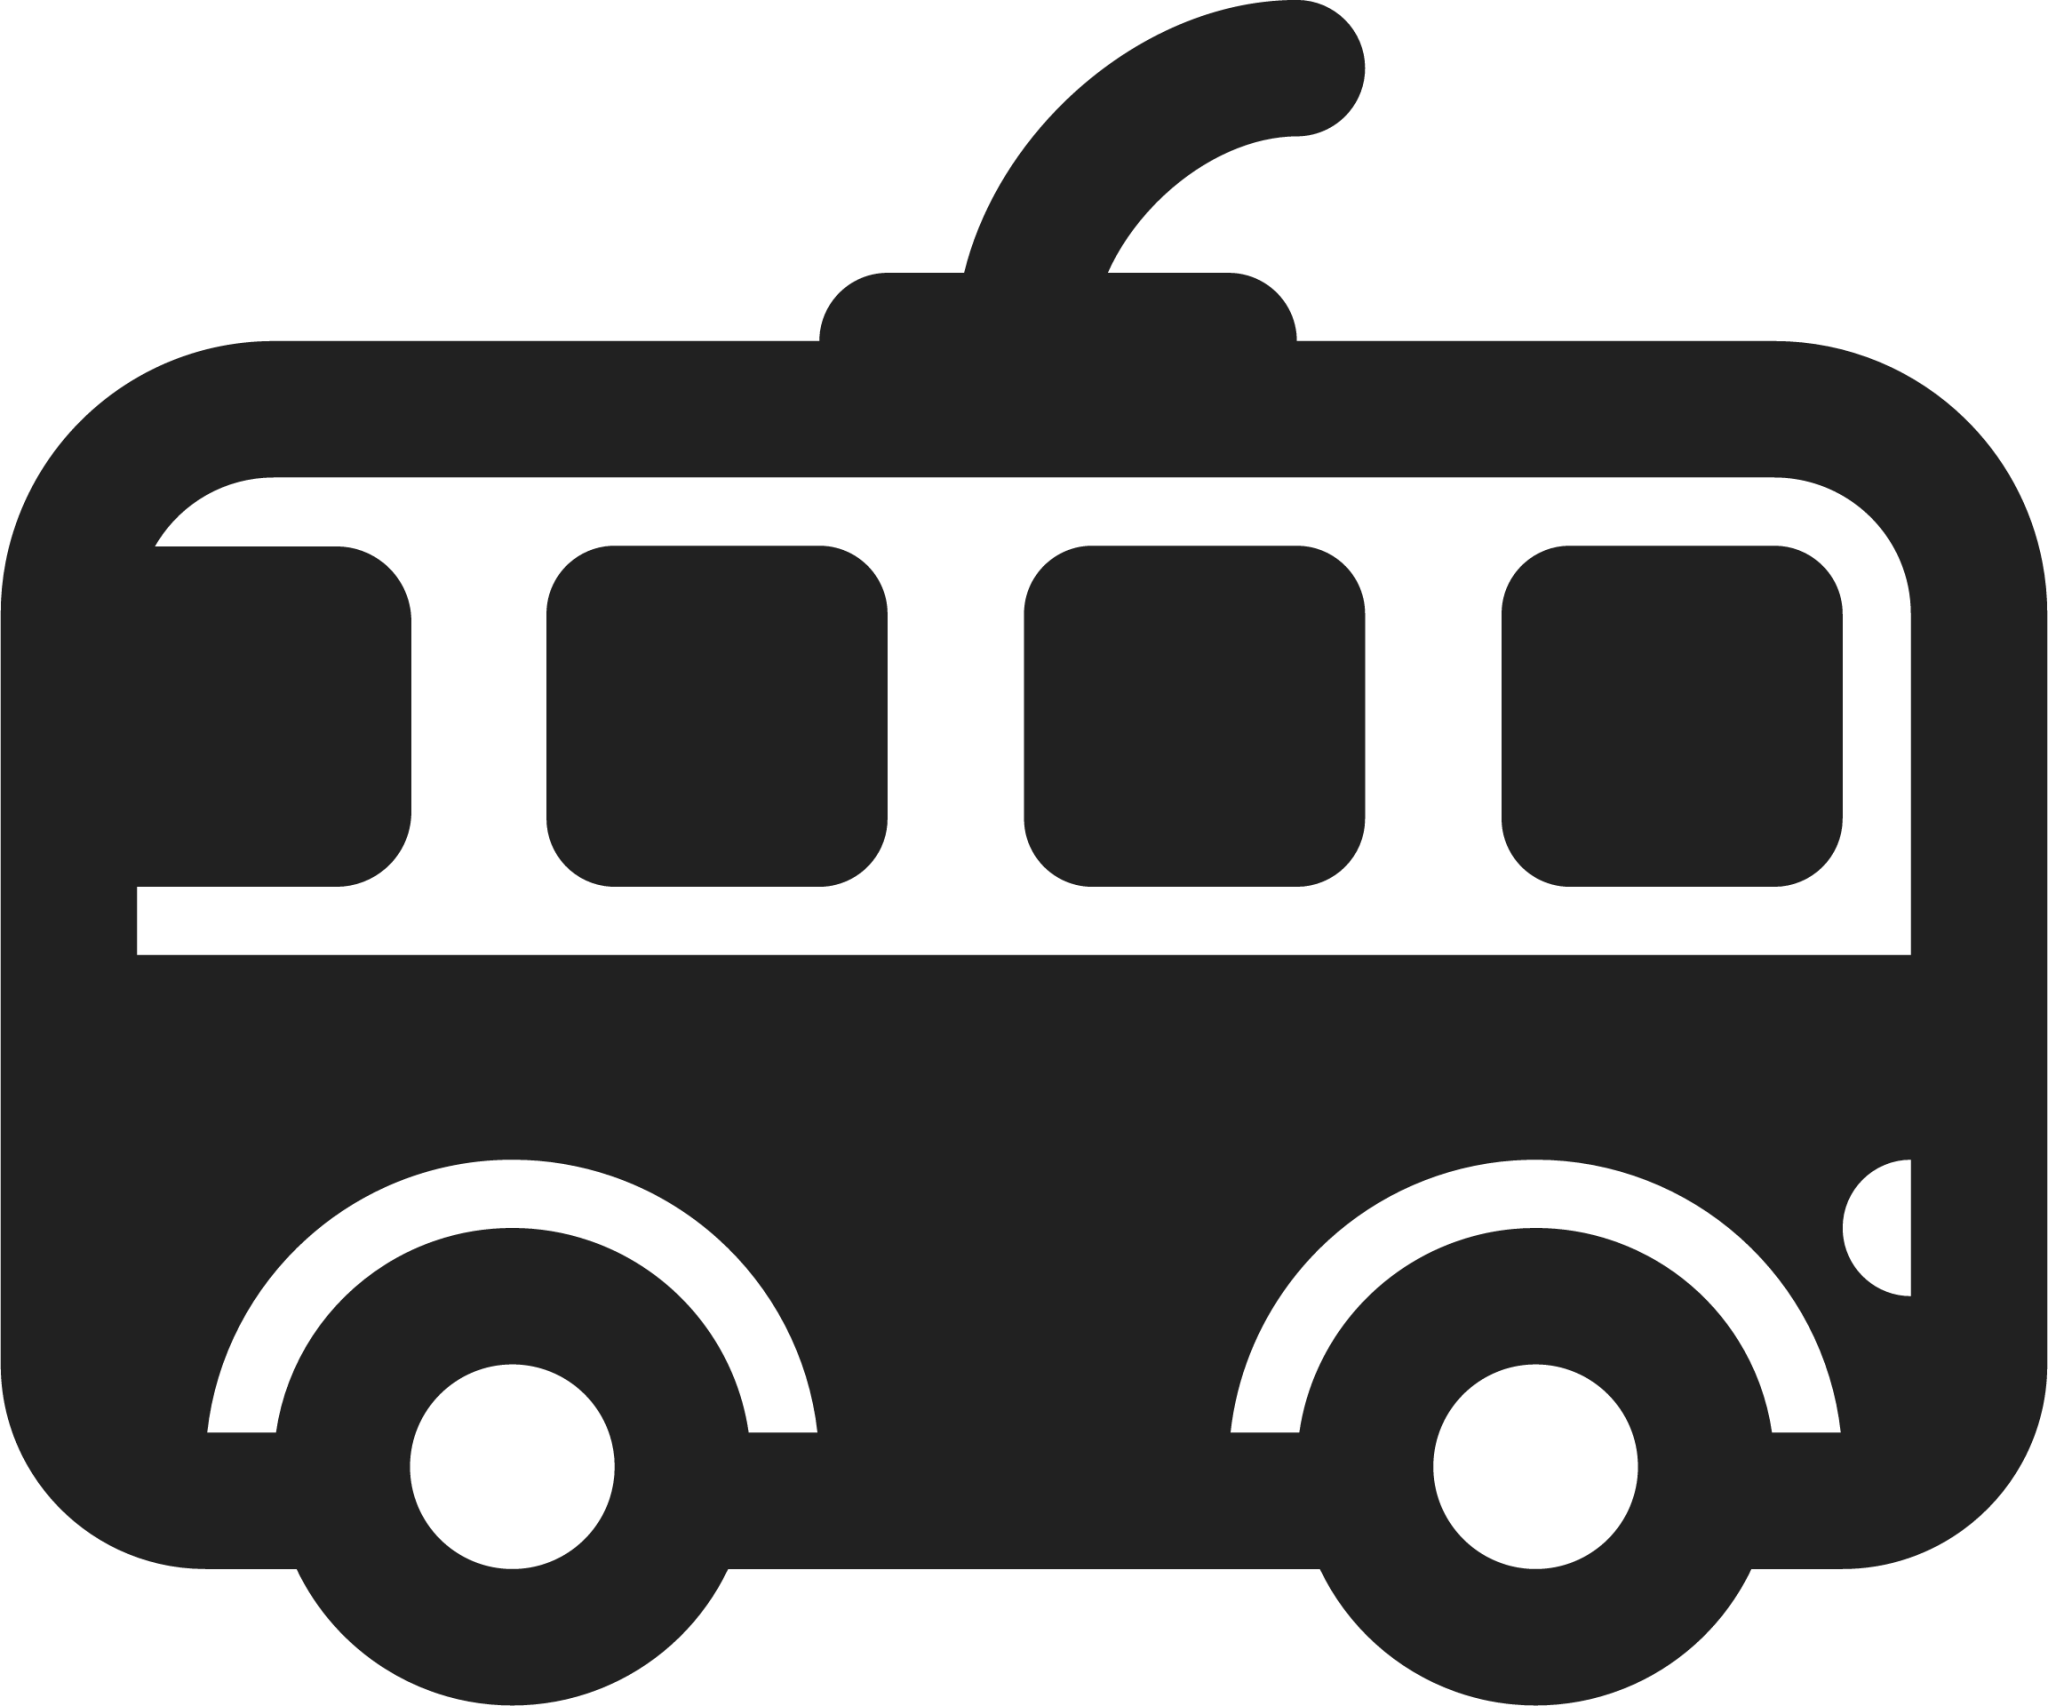 trolleybus emoji